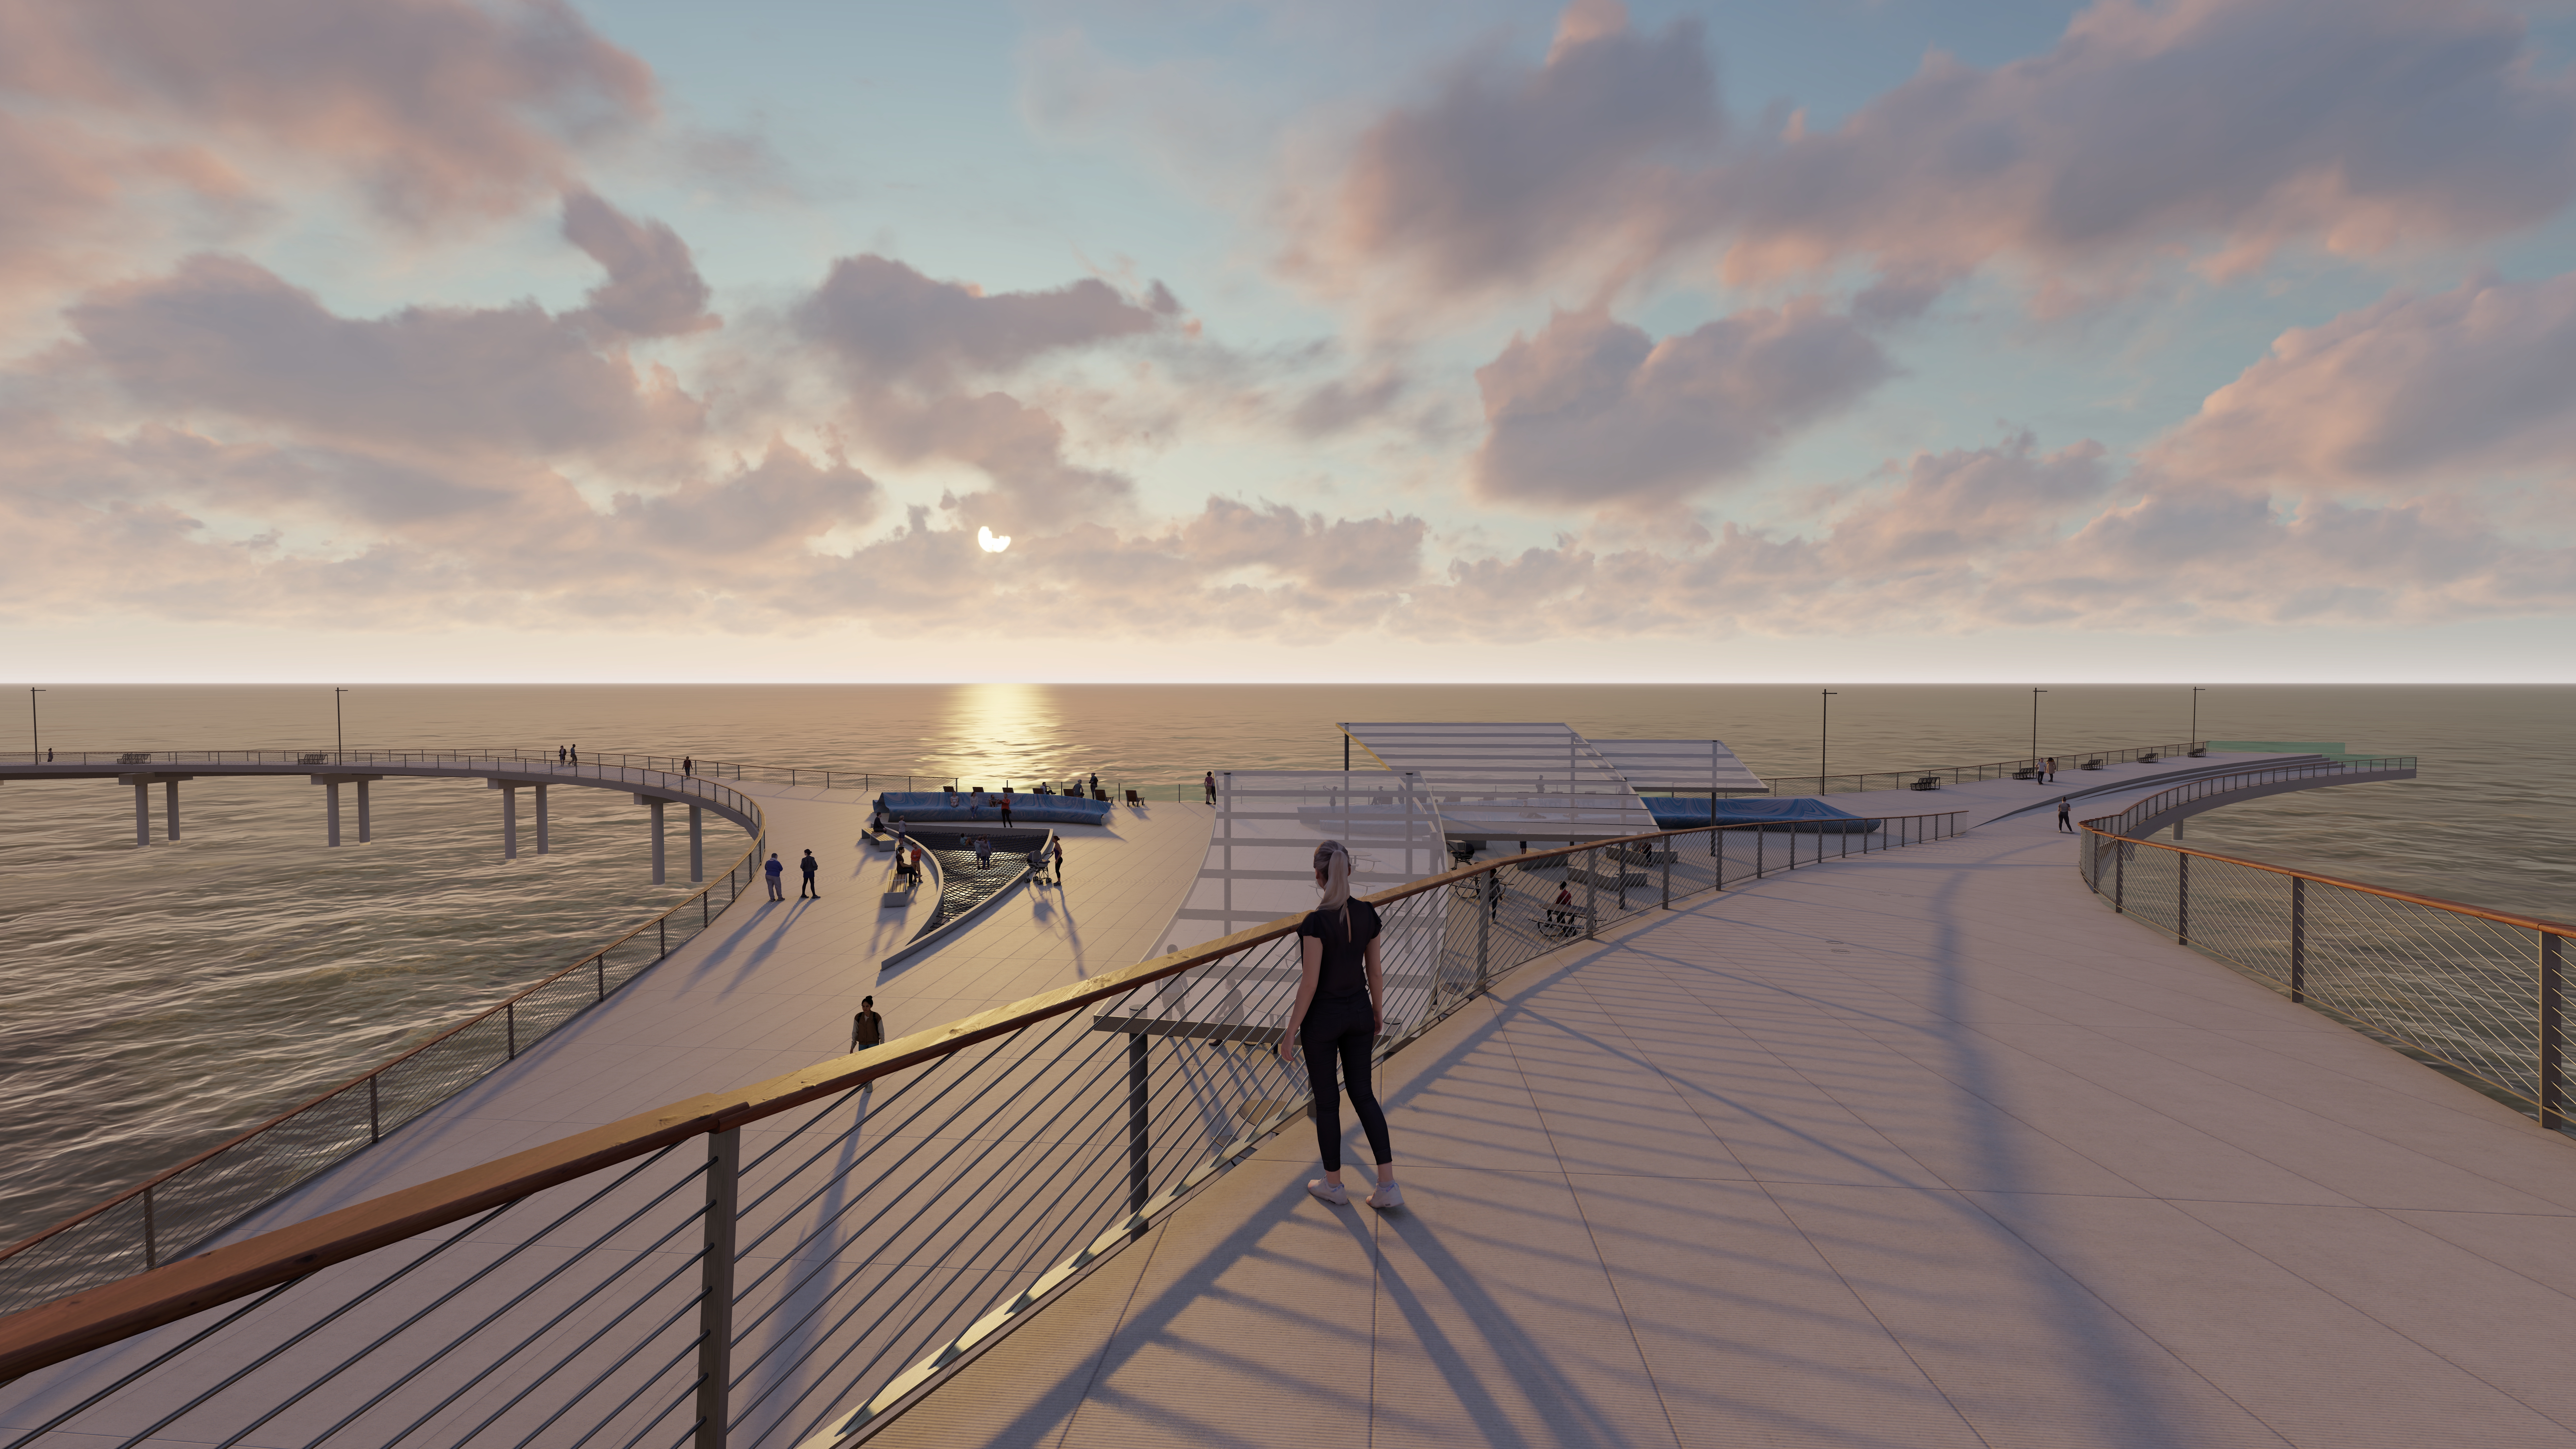 Ocean Beach Pier design concept 1: ‘The Braid'